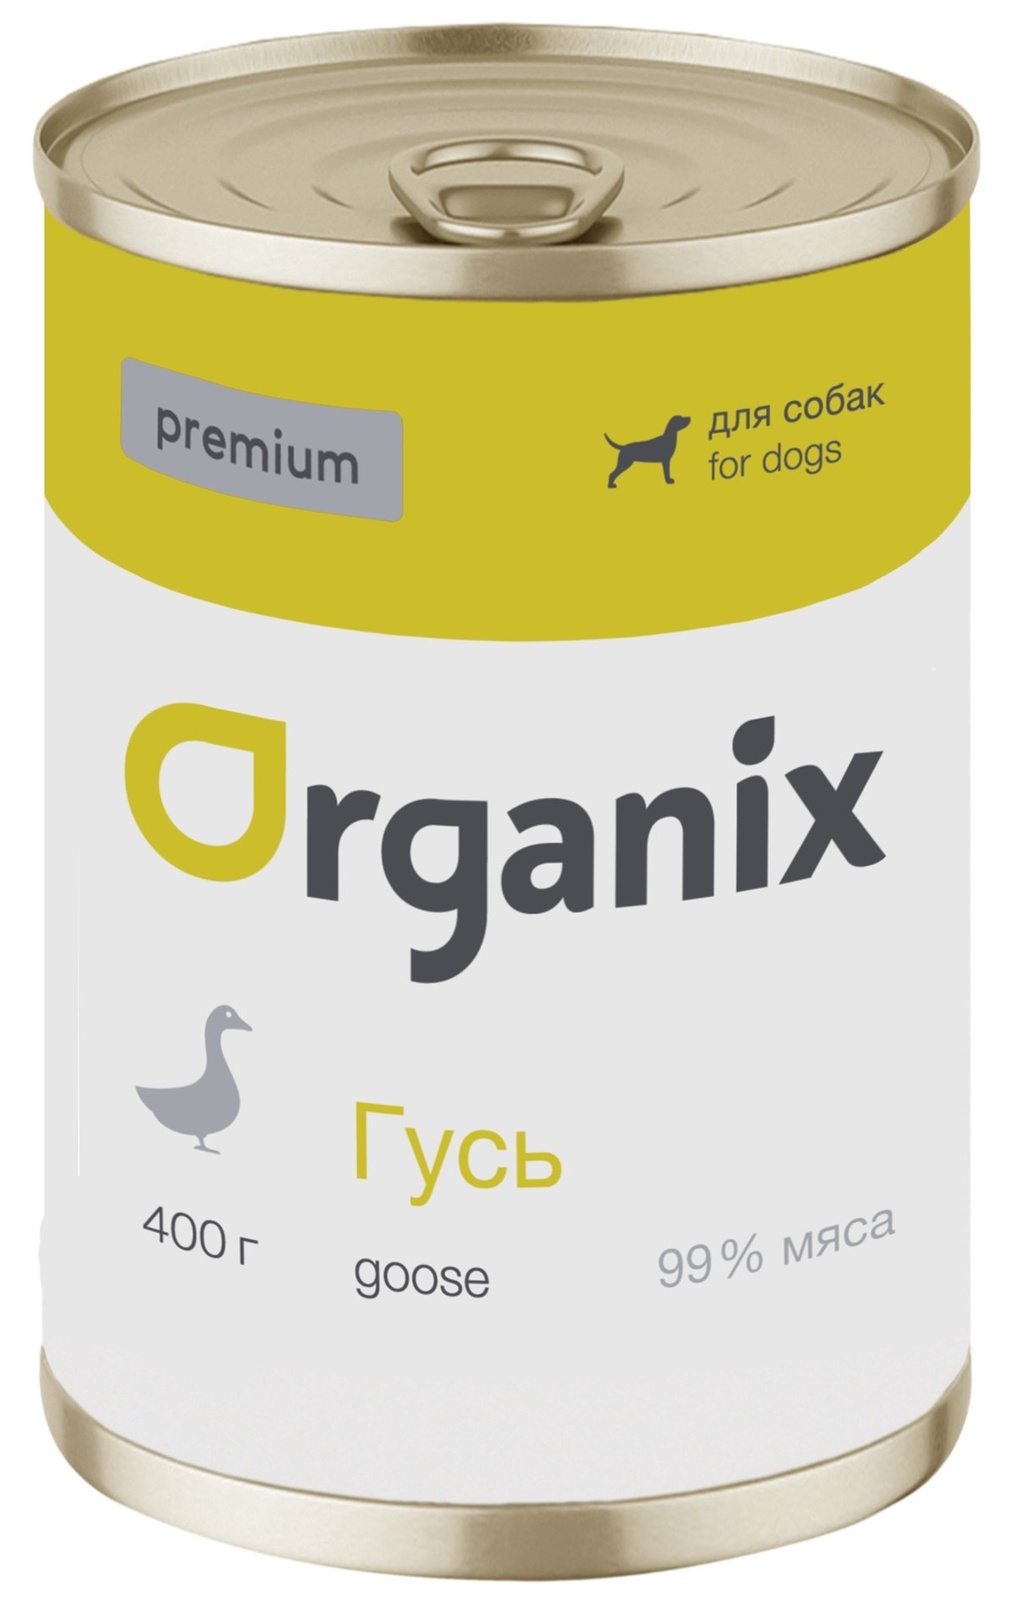 Organix консервы Organix монобелковые премиум консервы для собак, с гусем (100 г) organix консервы organix консервы для собак индейка с сердечками и шпинатом 100 г